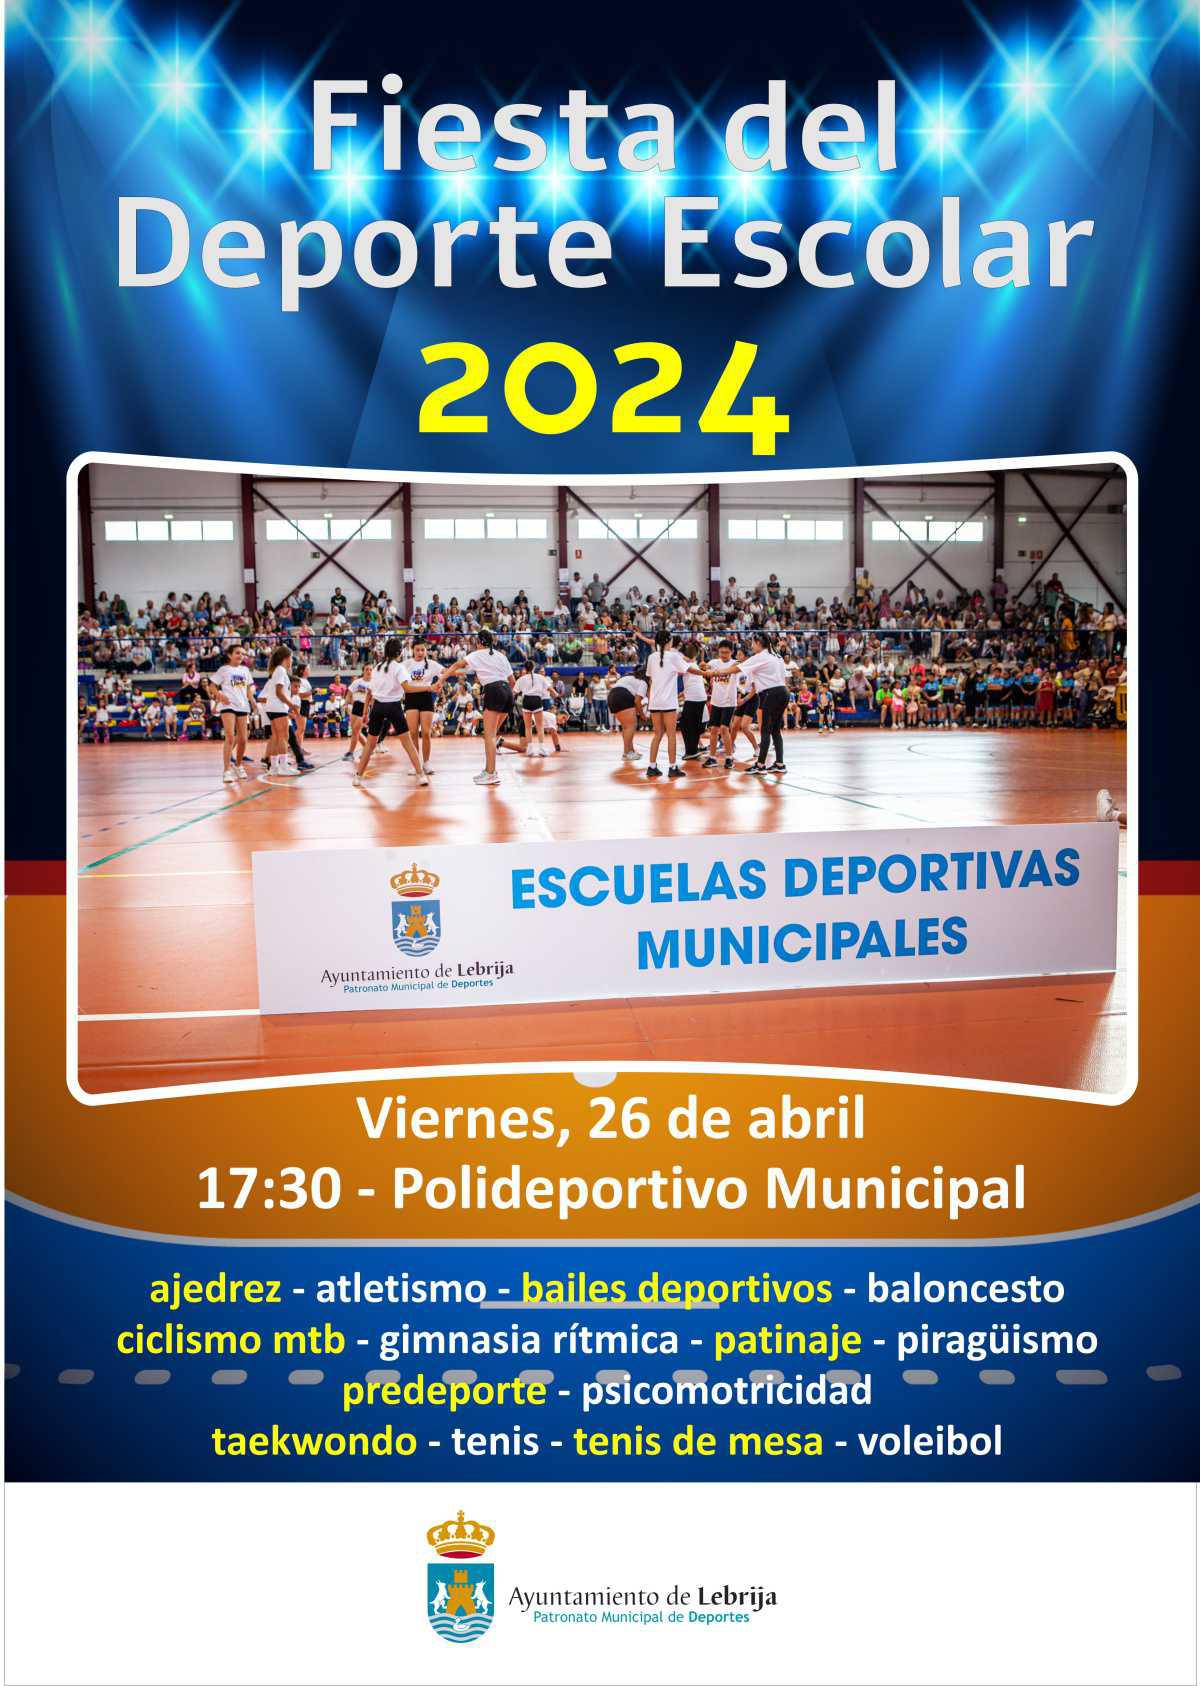 El viernes 26 de abril se celebra la Fiesta del Deporte Escolar 2024